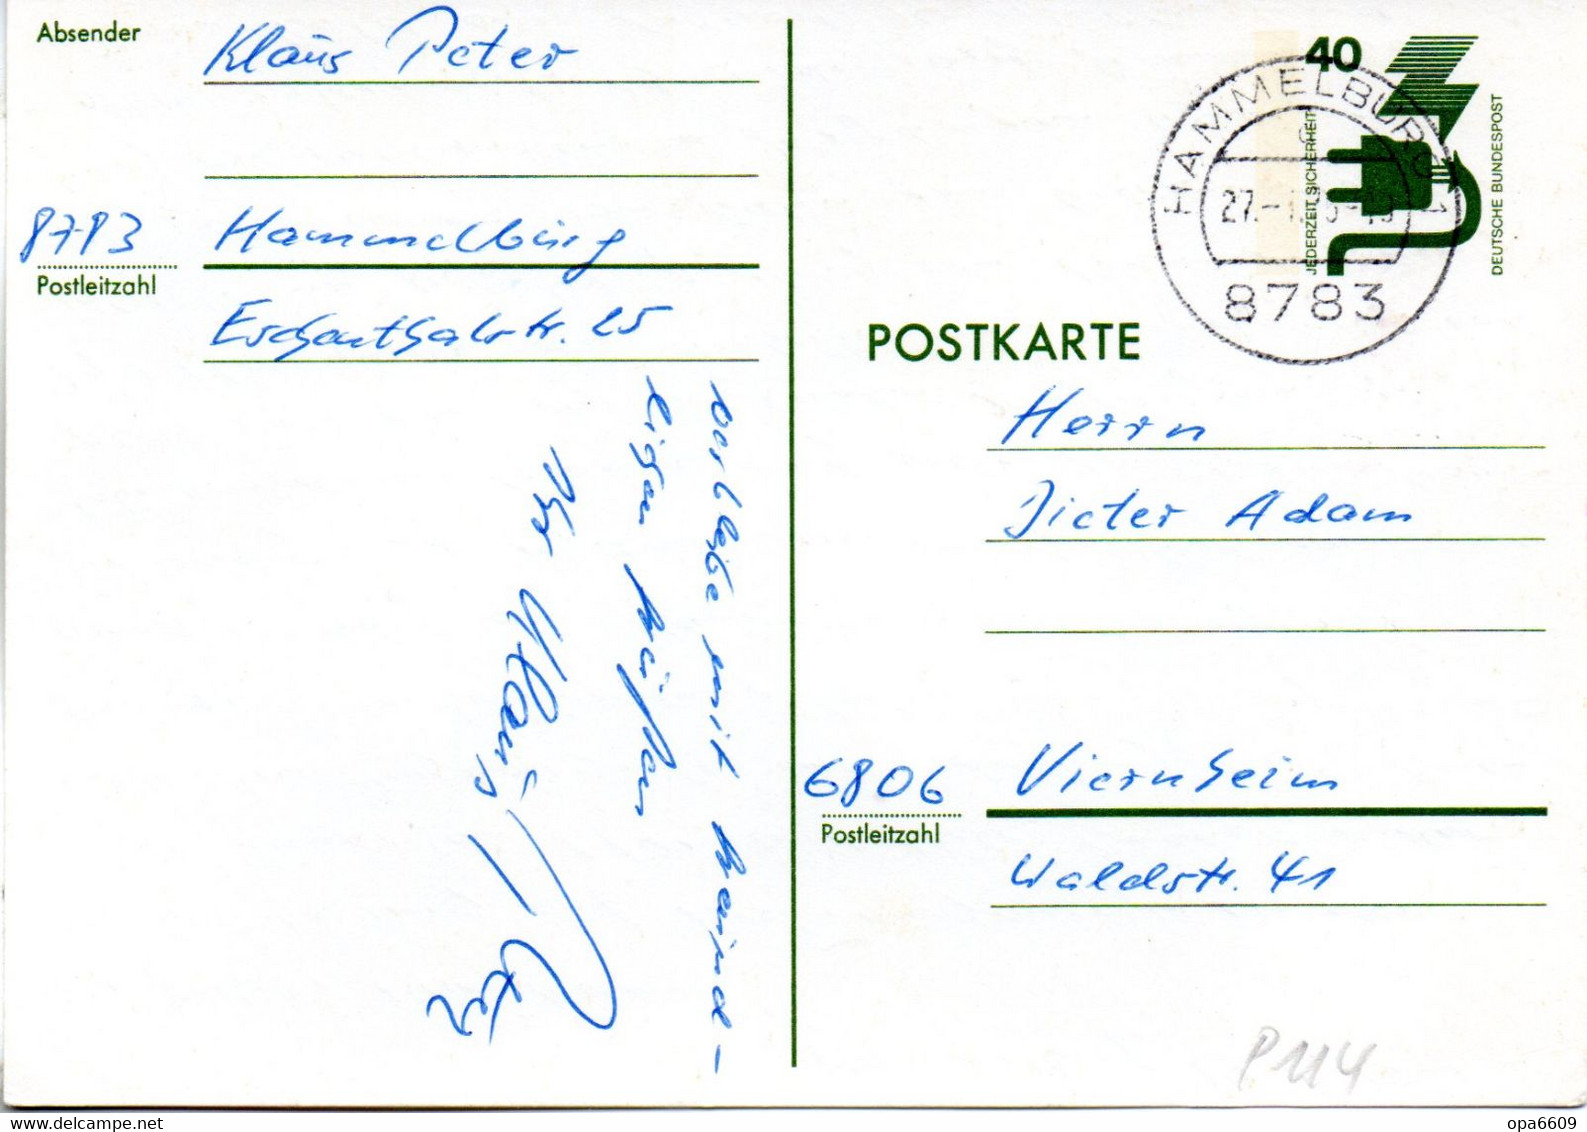 BRD Amtl.Ganzsachen-Postkarte  P117 WSt."Unfallverhütung" 40 (Pf) Olivgrün, TSt. 27.1.75 HAMMELBURG - Postkarten - Gebraucht